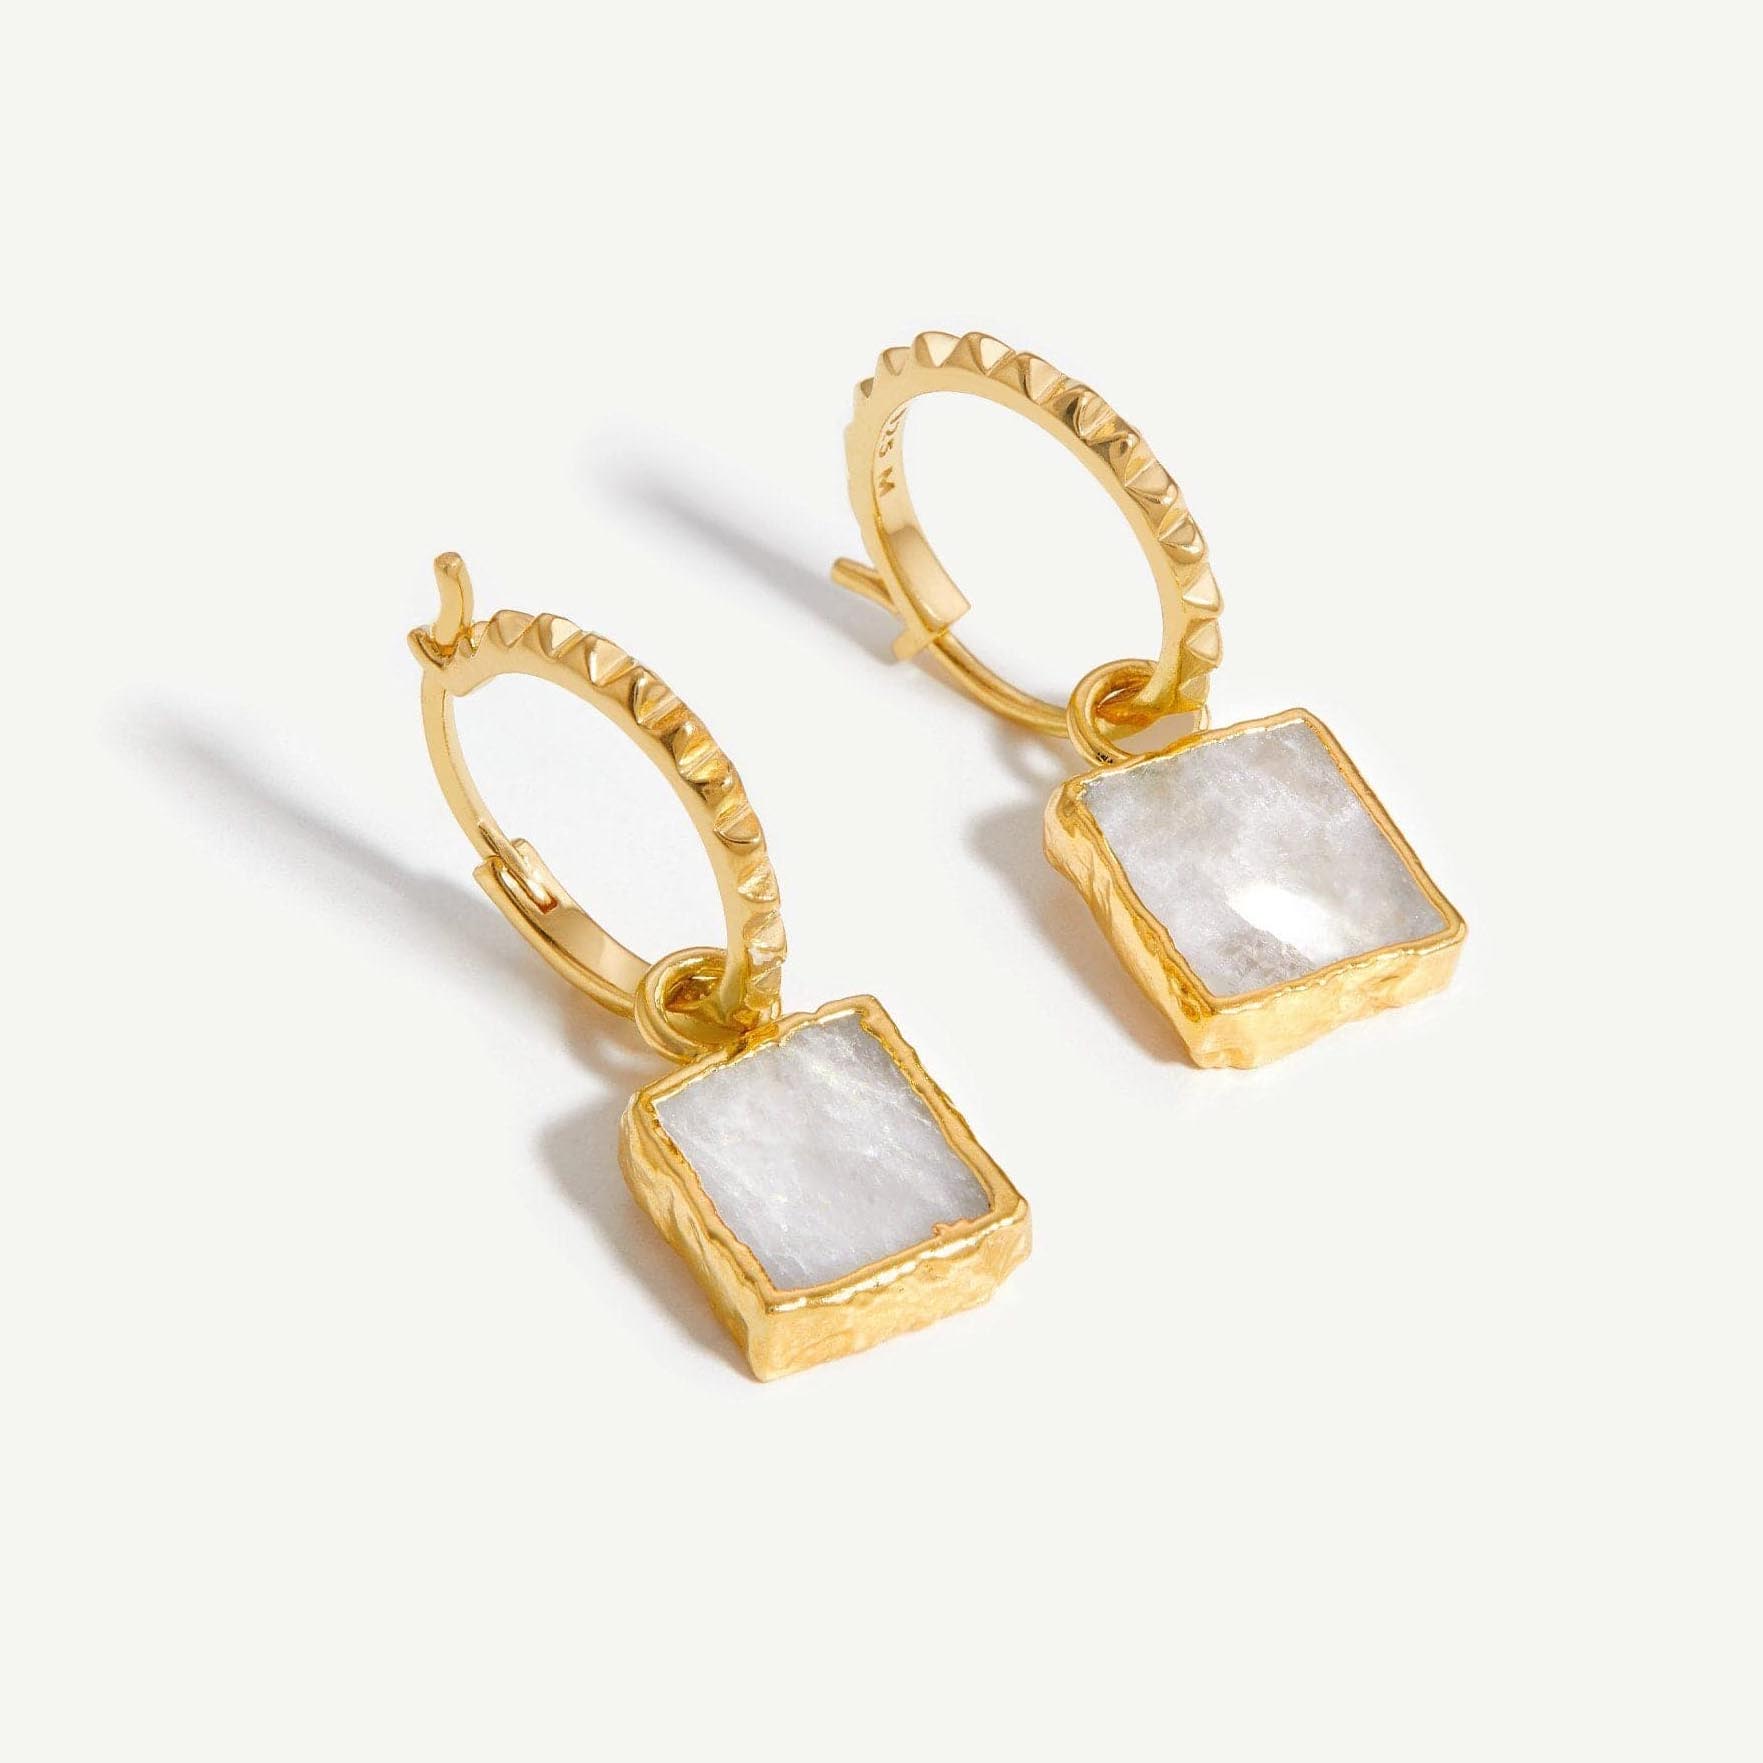 Anpassade smyckestillverkare OEM ODM 925 silverörhängen i 18k guldpläterade